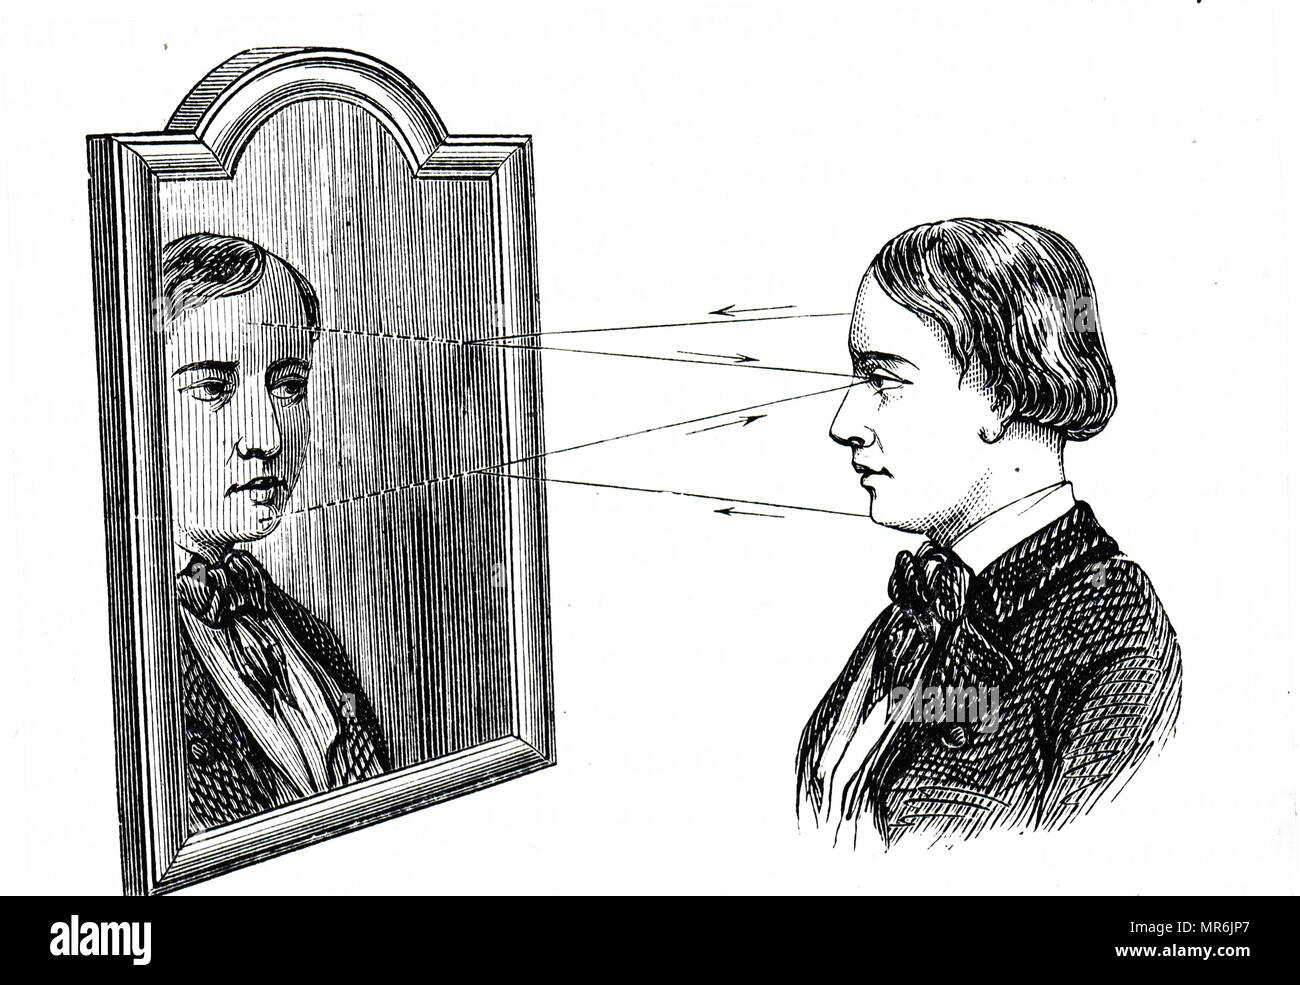 Gravure illustrant la réflexion d'un objet dans un miroir plan, montrant comment l'angle de réflexion. En date du 19e siècle Banque D'Images